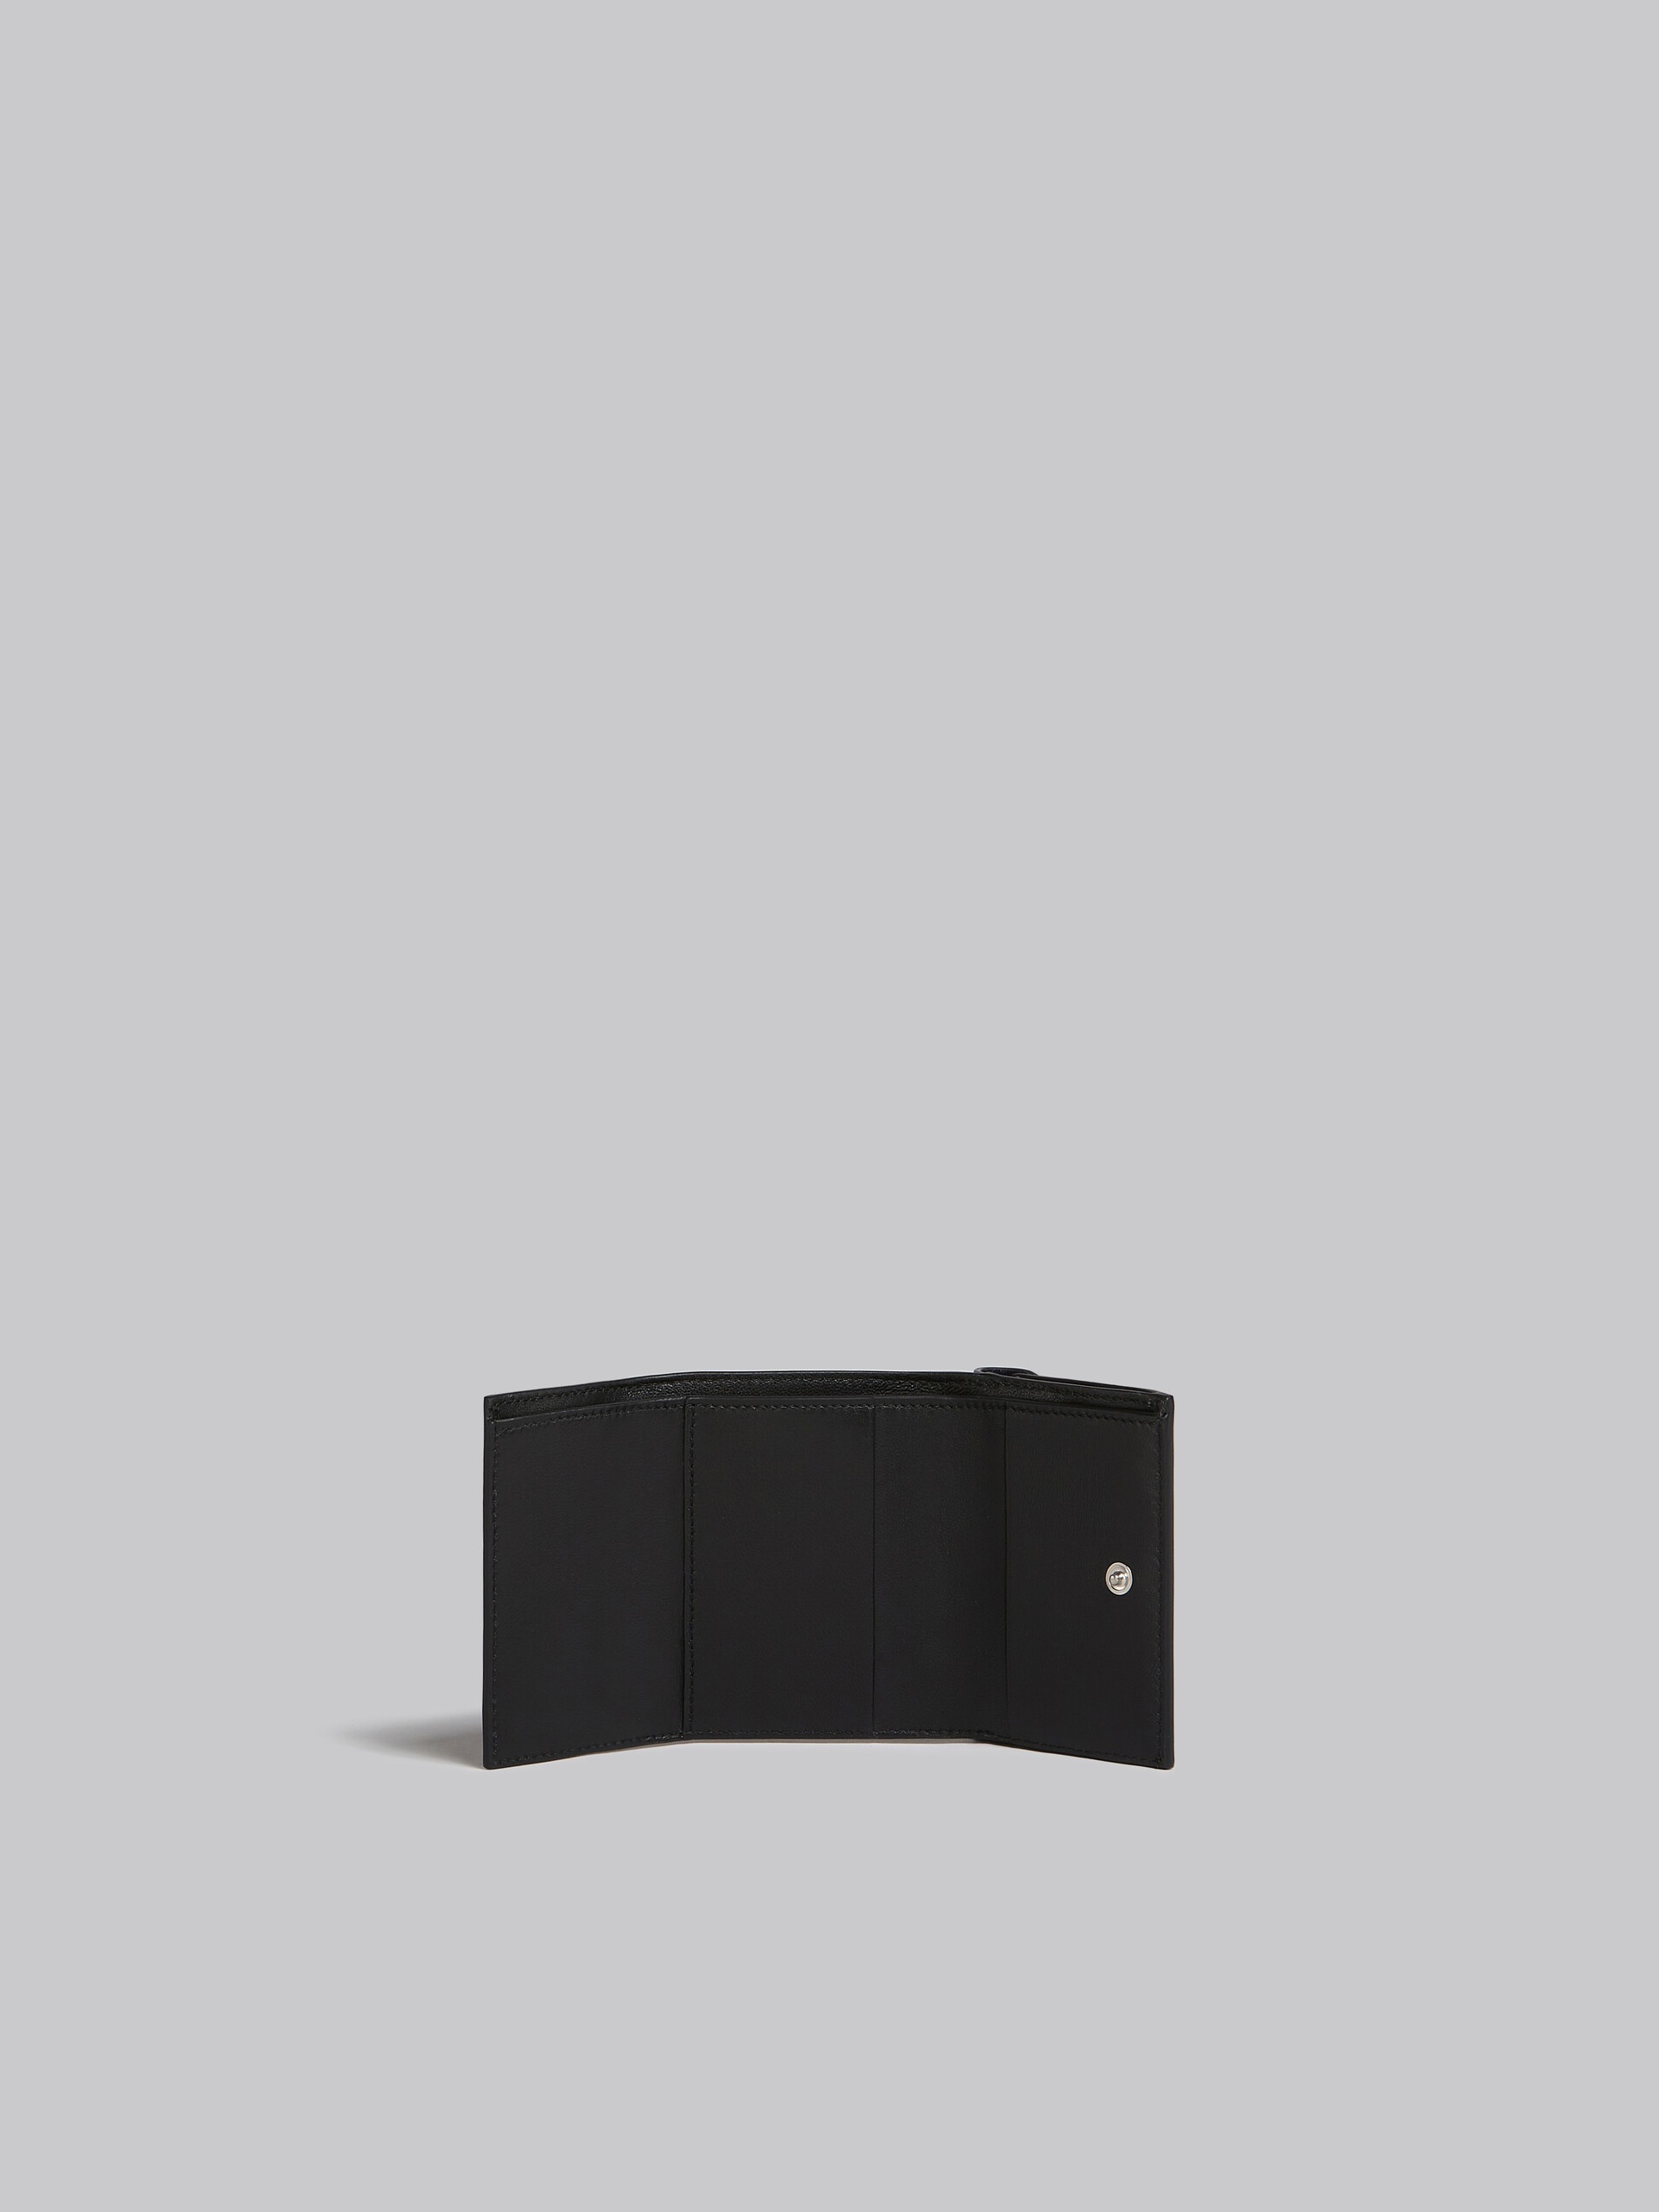 ネイビーブルーとブラック レザー製三つ折りウォレット - 財布 - Image 2